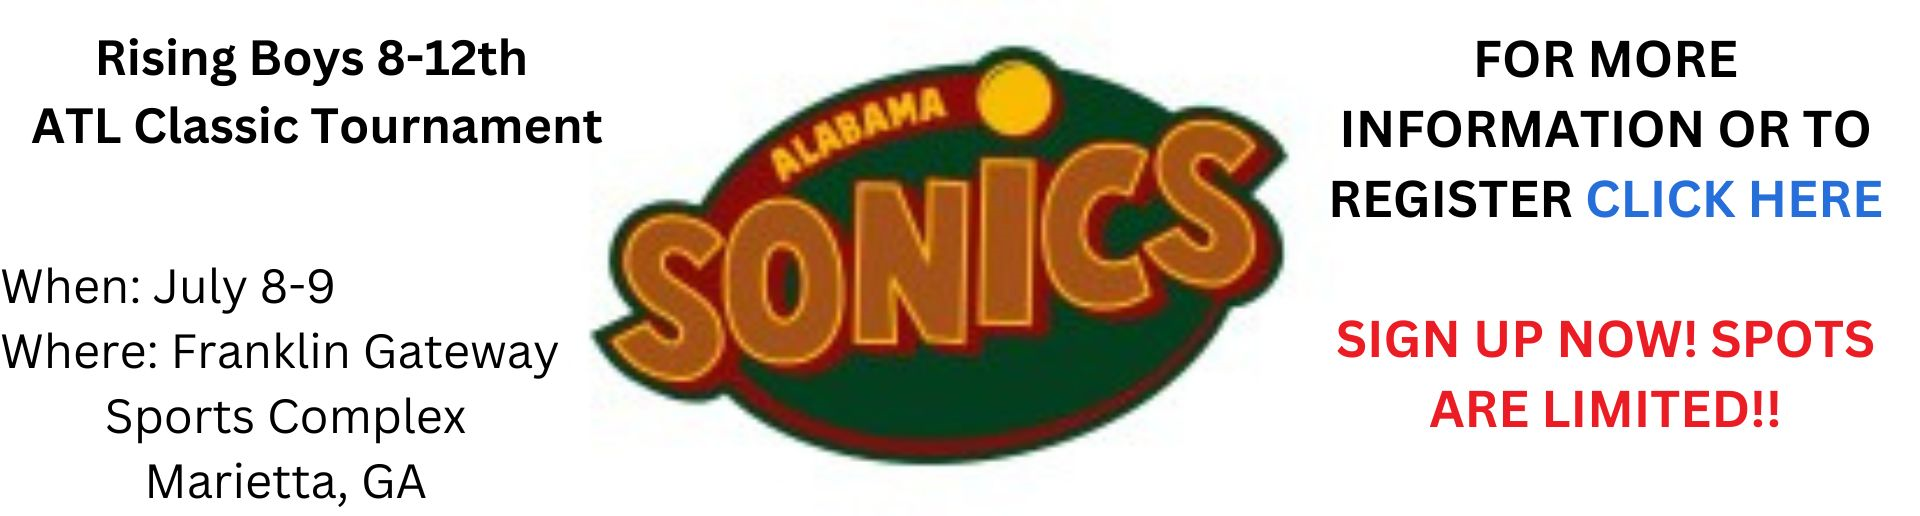 Southeast Sonics ATL Classic